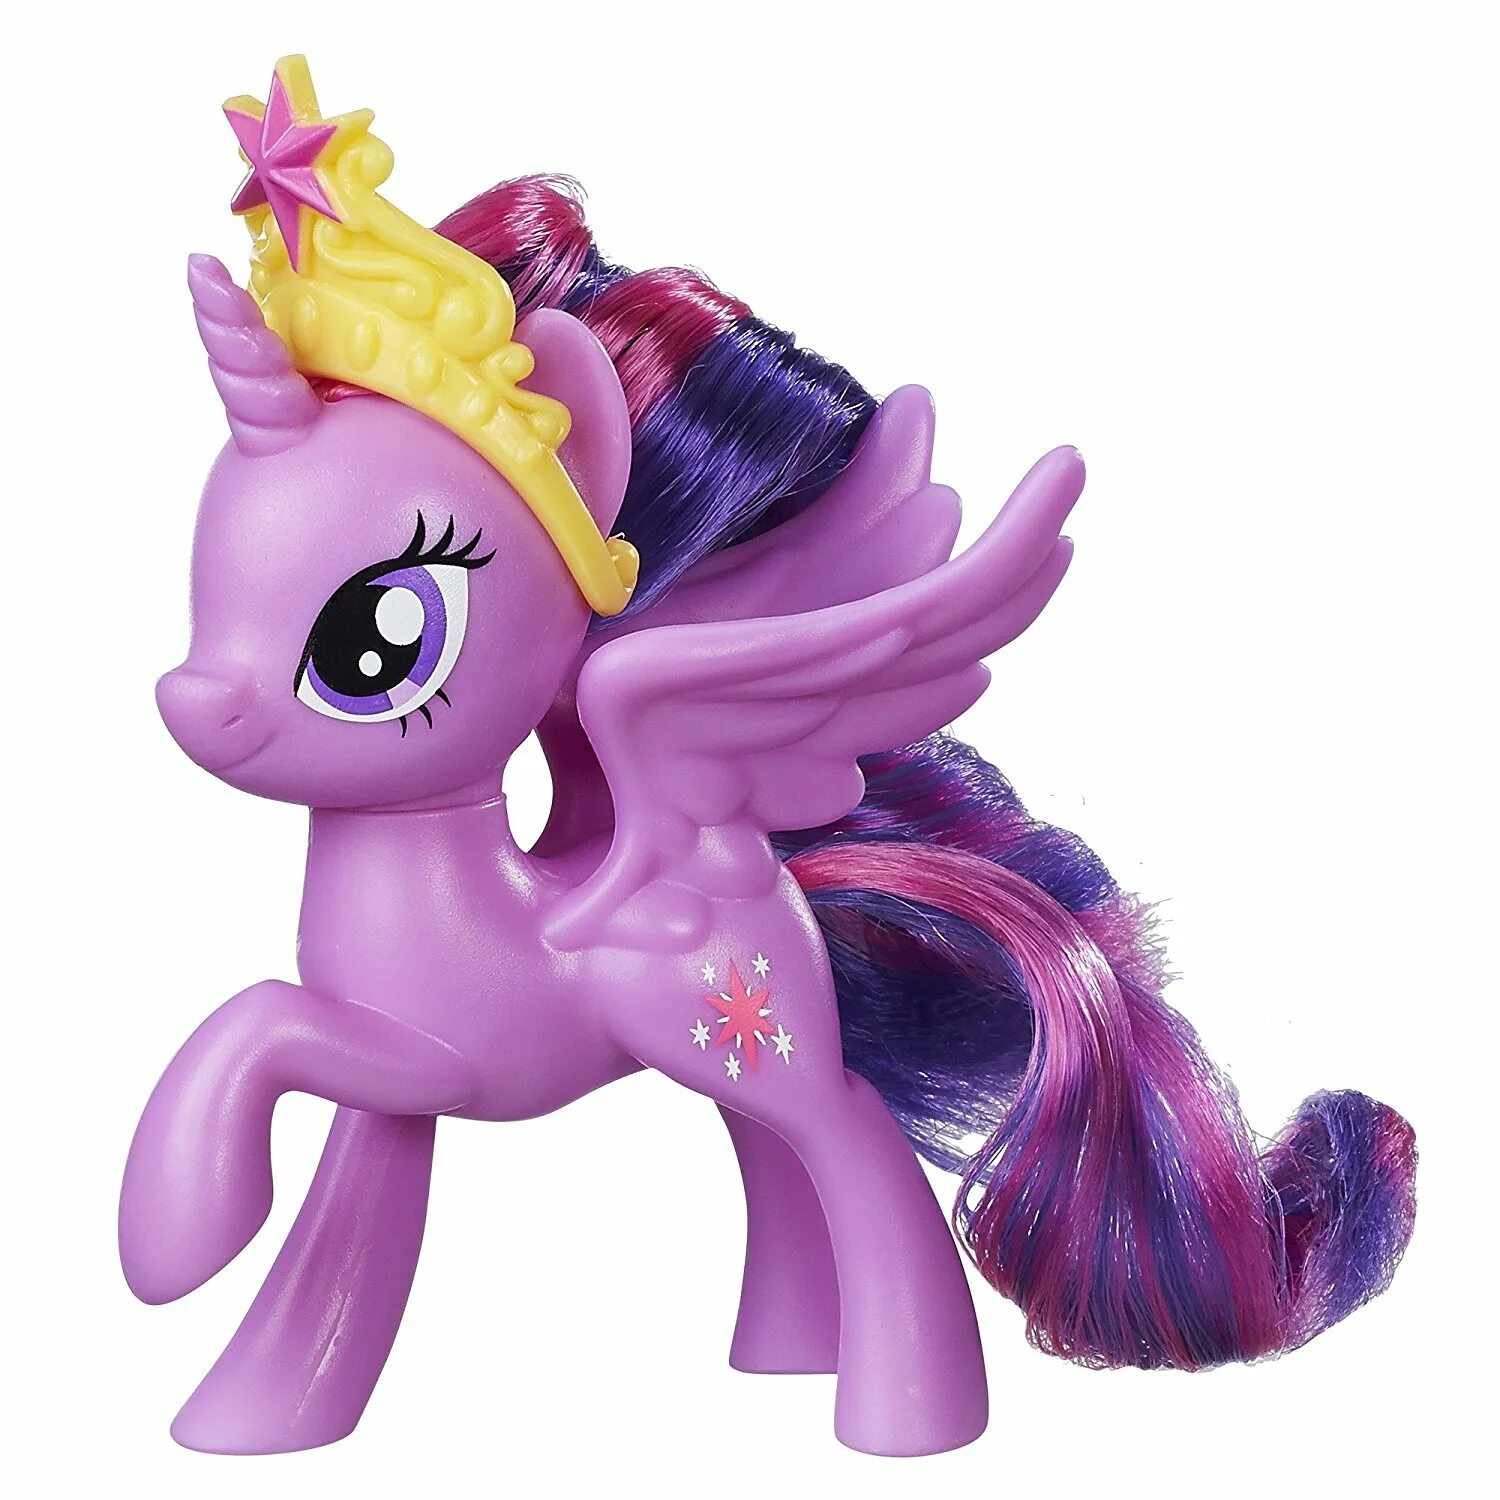 Фигурка Hasbro Twilight Sparkle e0714. Фигурка Hasbro Twilight Sparkle b6371. Принцесса Твайлайт Спаркл игрушка. Pony Твайлайт игрушки Hasbro.